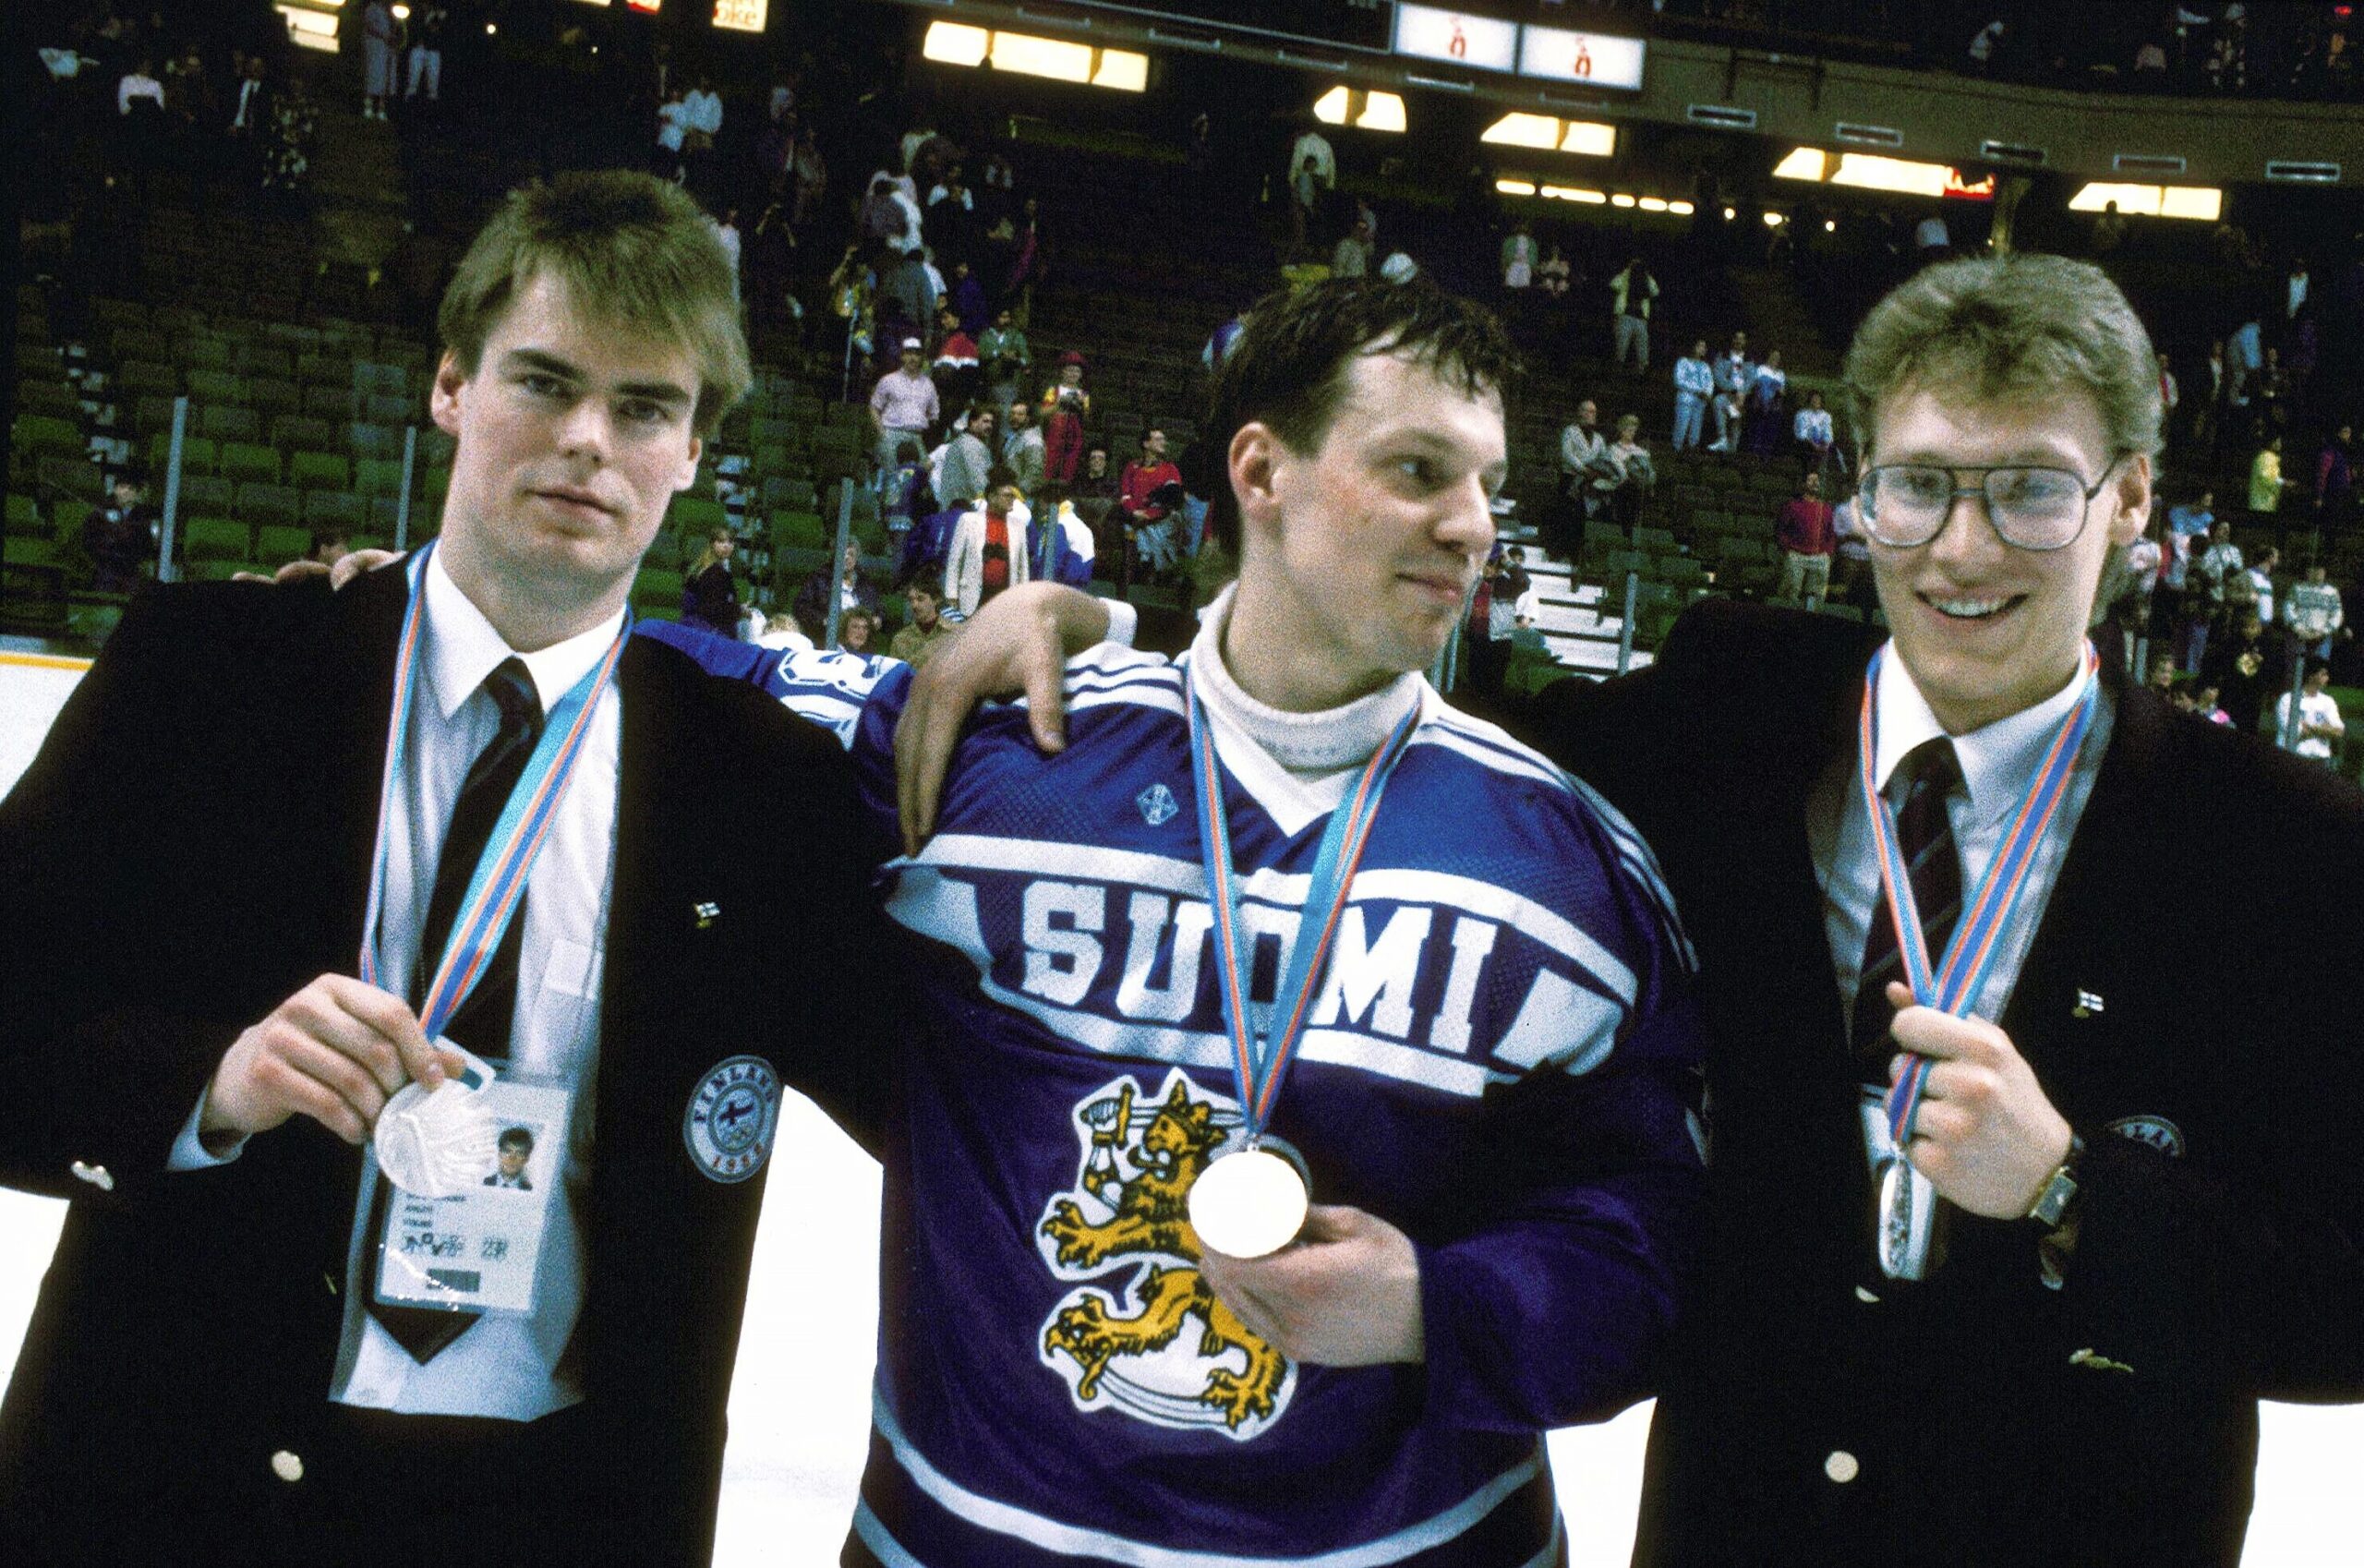 Leijonat voitti ja kulkivat pitkän tien olympiakultaan. Raimo Helminen oli Leijonien tehokkain pelaaja Calgaryn olympialaisissa 1988. Jukka Tammi torjui silloin ratkaisevassa ottelussa voiton Neuvostoliitosta.